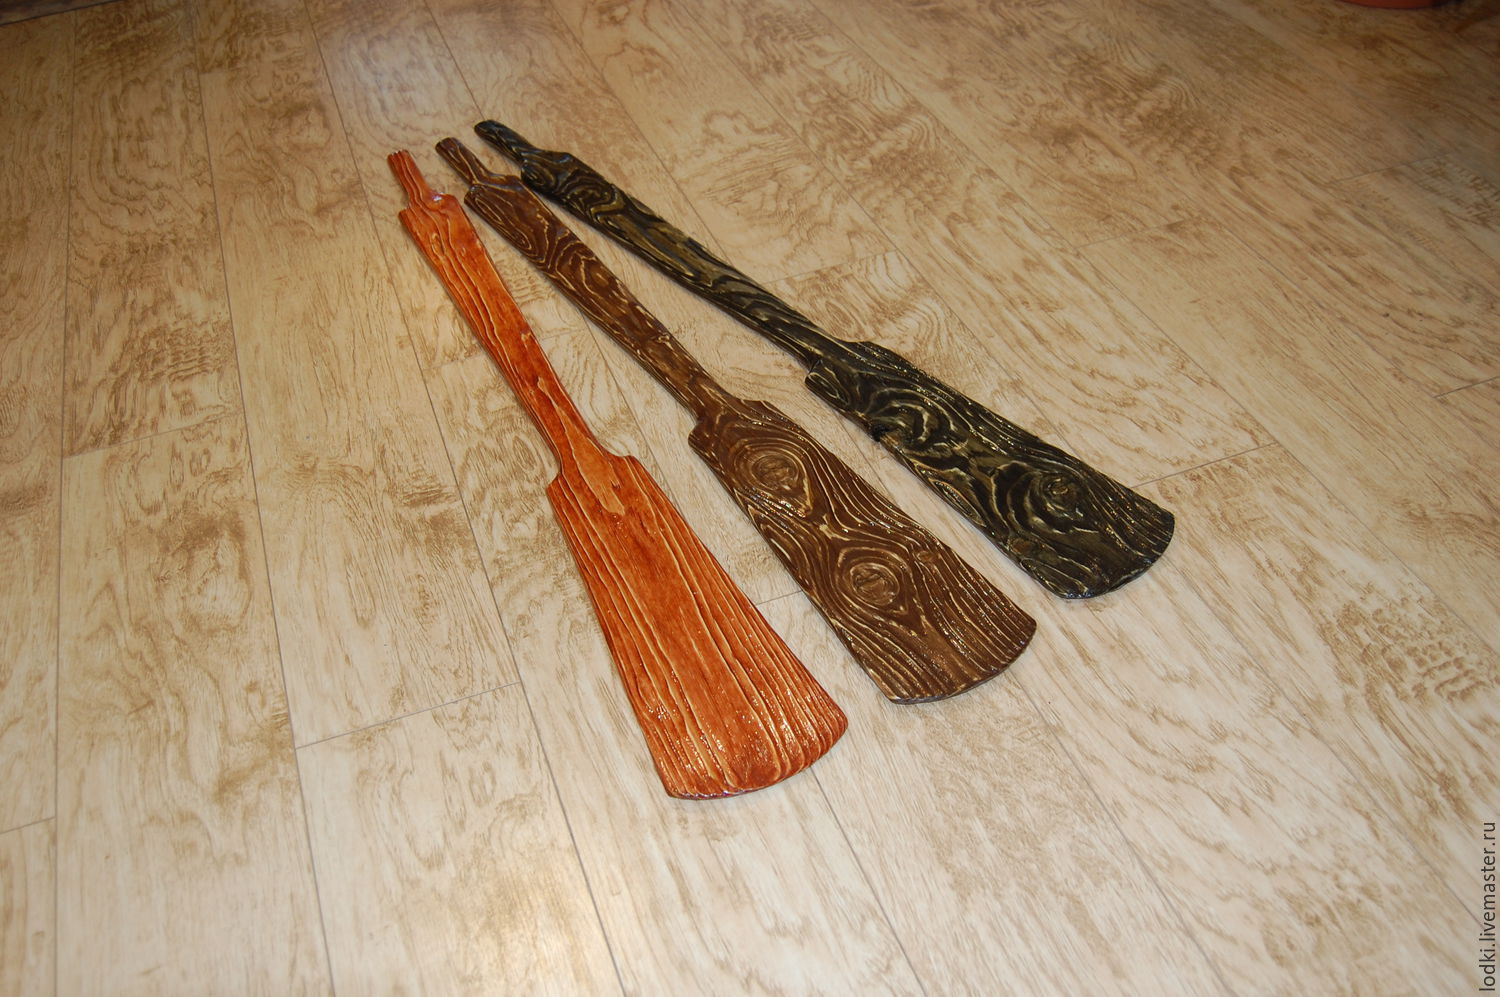 Весло деревянное декоративное